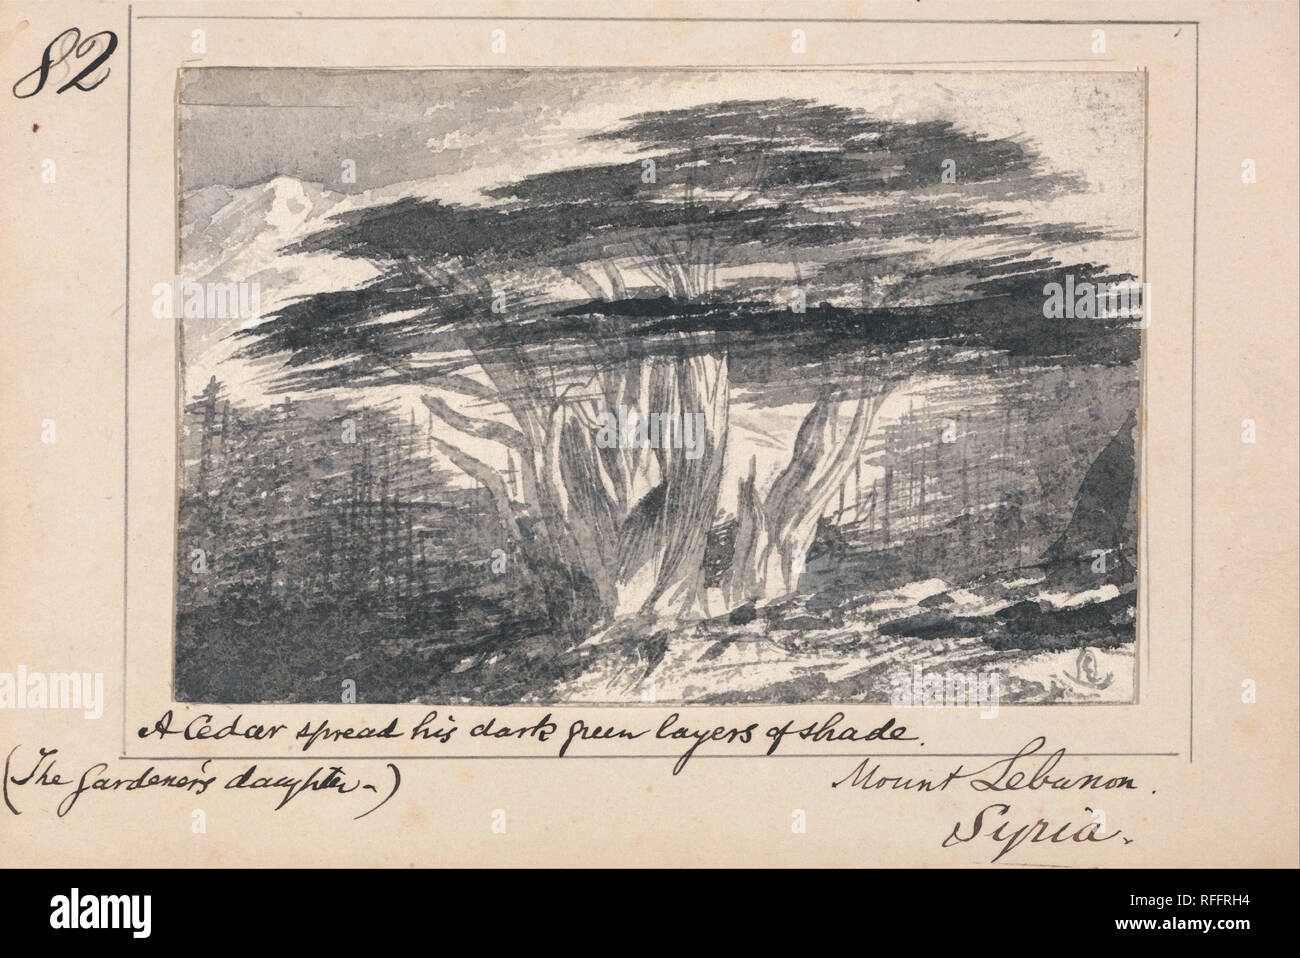 Illustrazione di Tennyson 'il giardiniere della figlia:' monte Libano,  Siria - 'un cedro diffondere il suo verde scuro di strati di ombra".  Paesaggio. Penna in bianco e nero e grigio con inchiostro